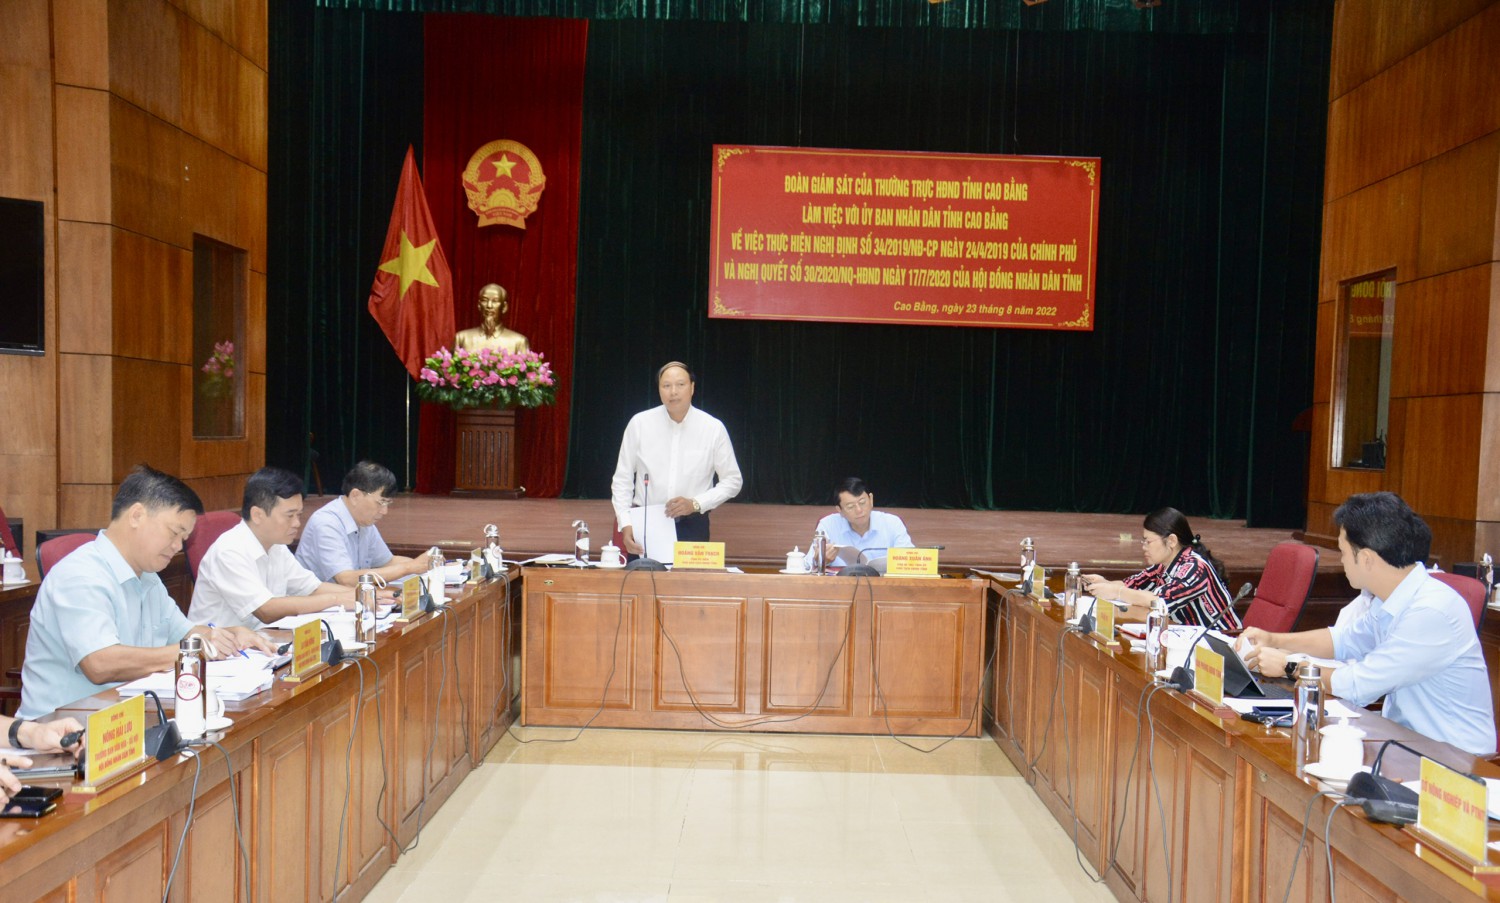 Phó Chủ tịch HĐND tỉnh Hoàng Văn Thạch phát biểu kết luận buổi giám sát